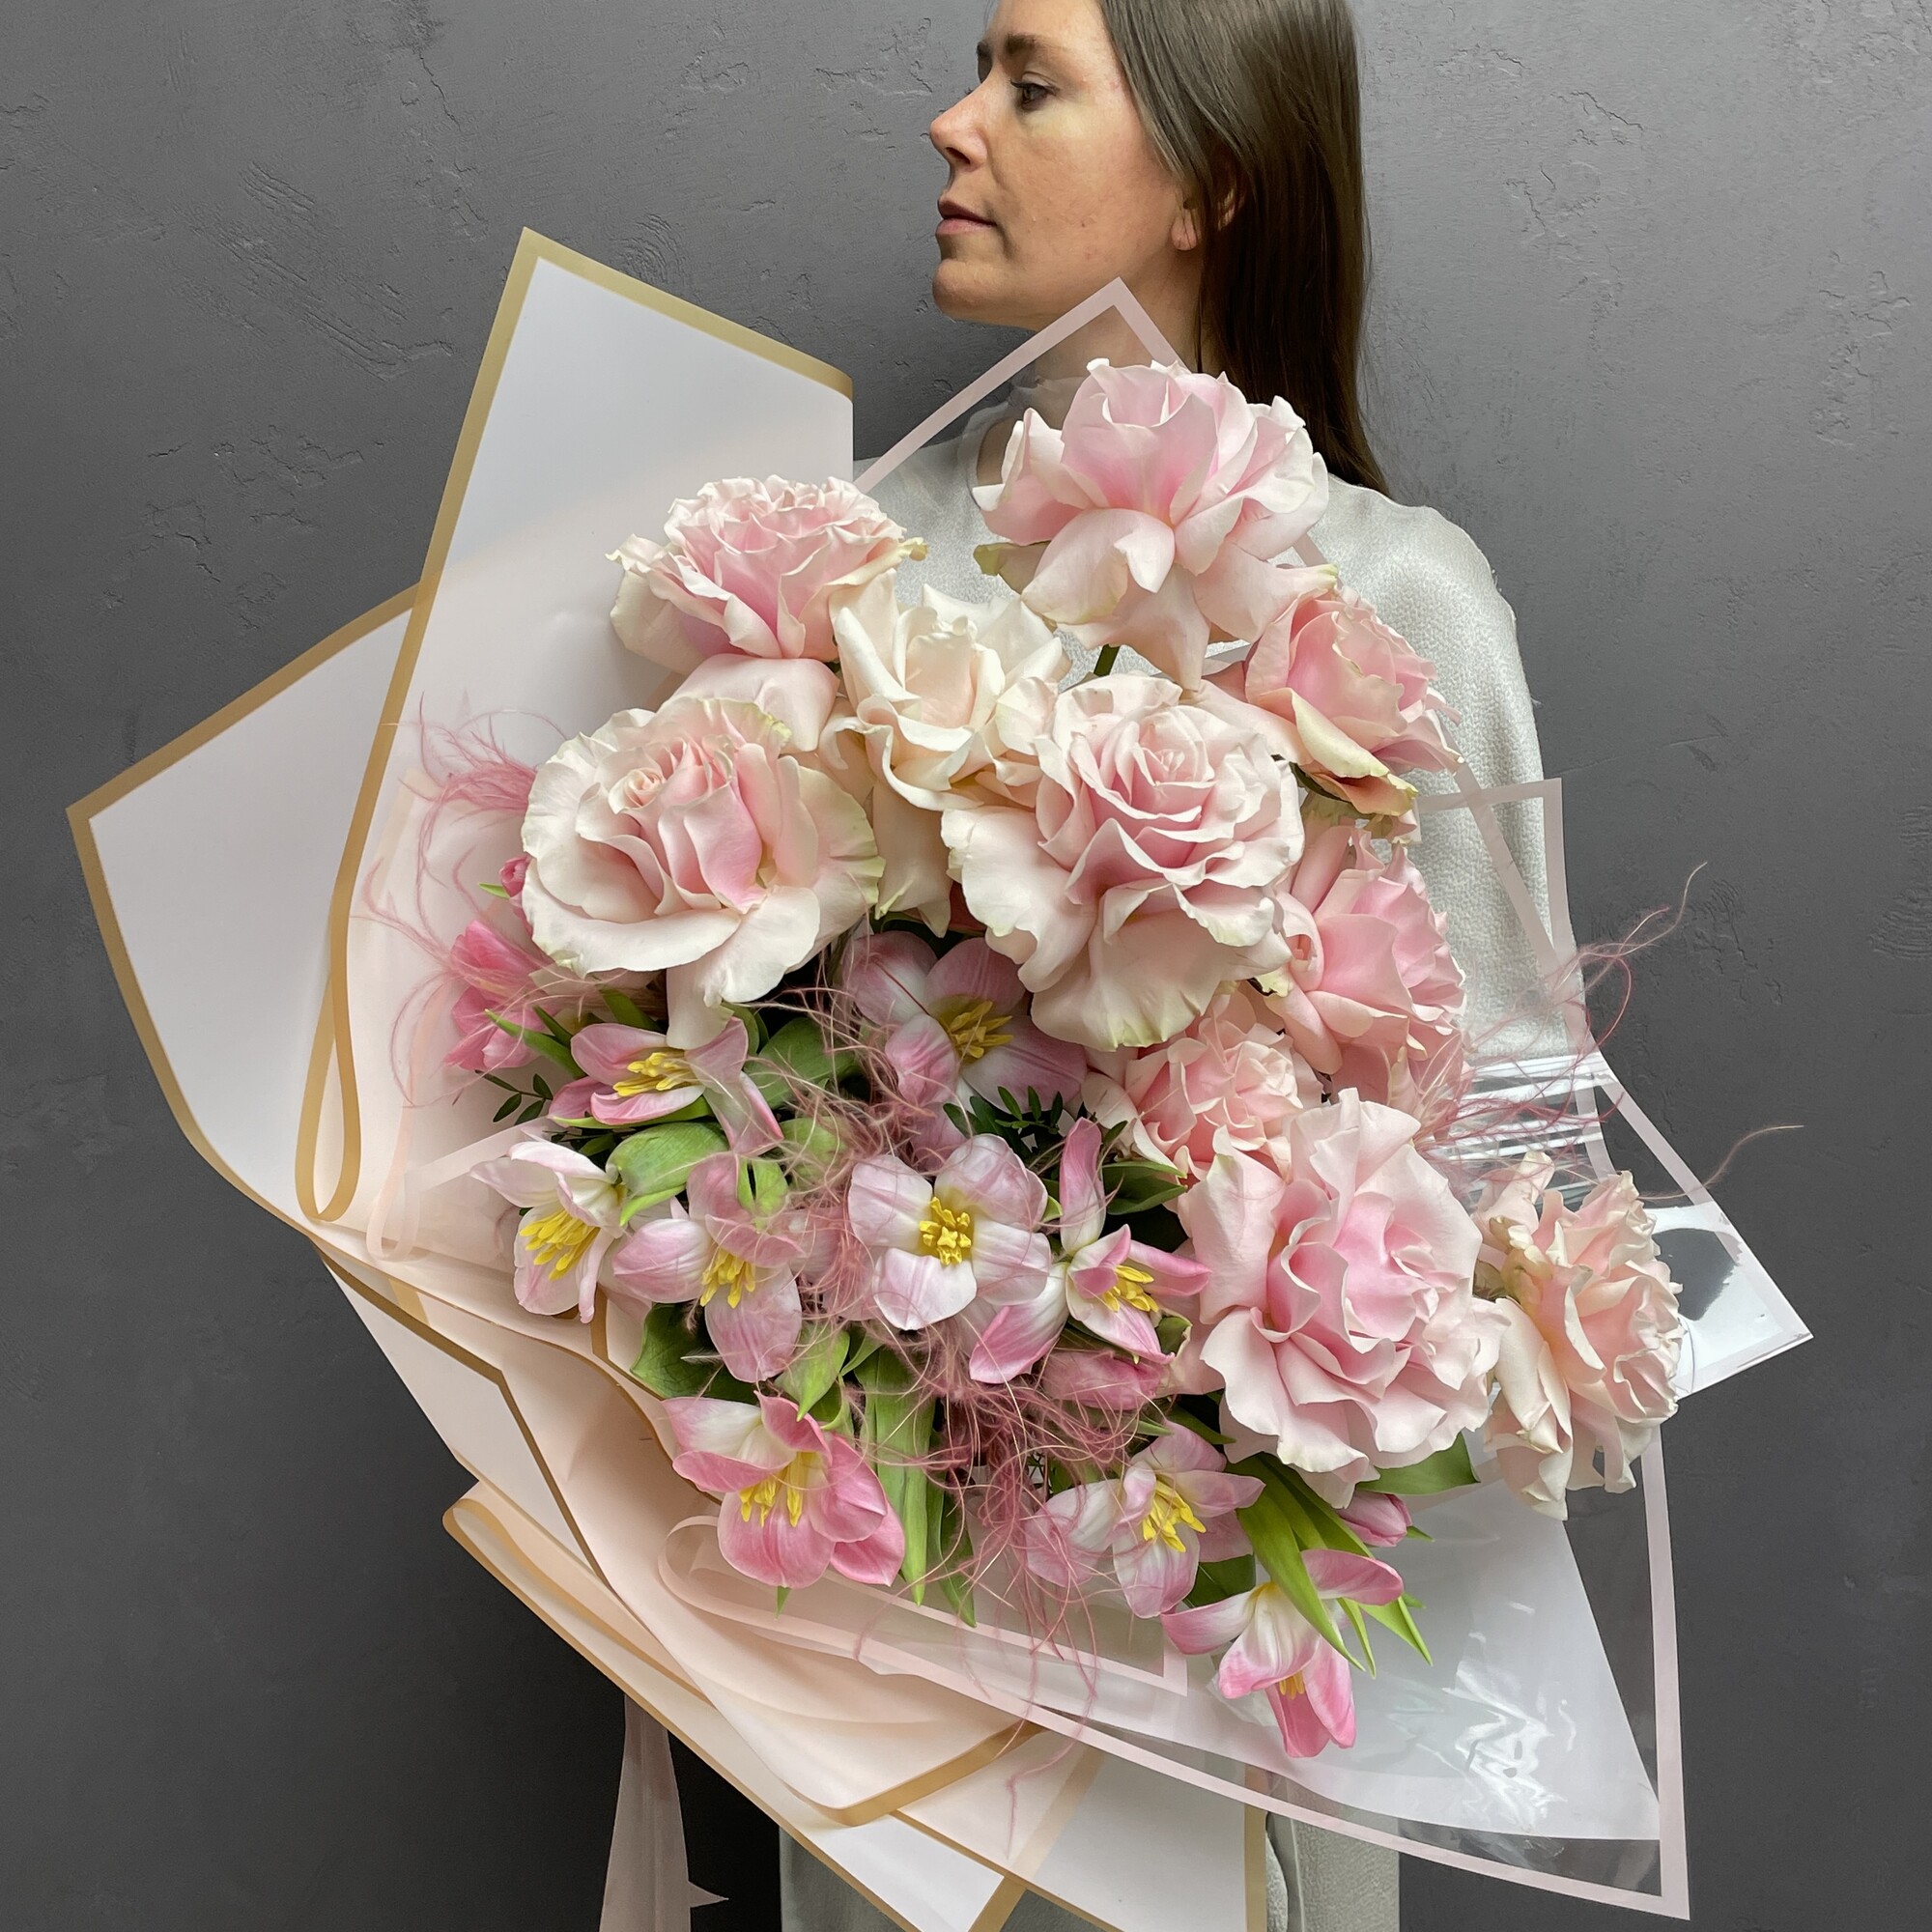 Романтичный авторский букет в нежных тонах из свежих тюльпанов и французких роз "ПАРИ ДРИМ"